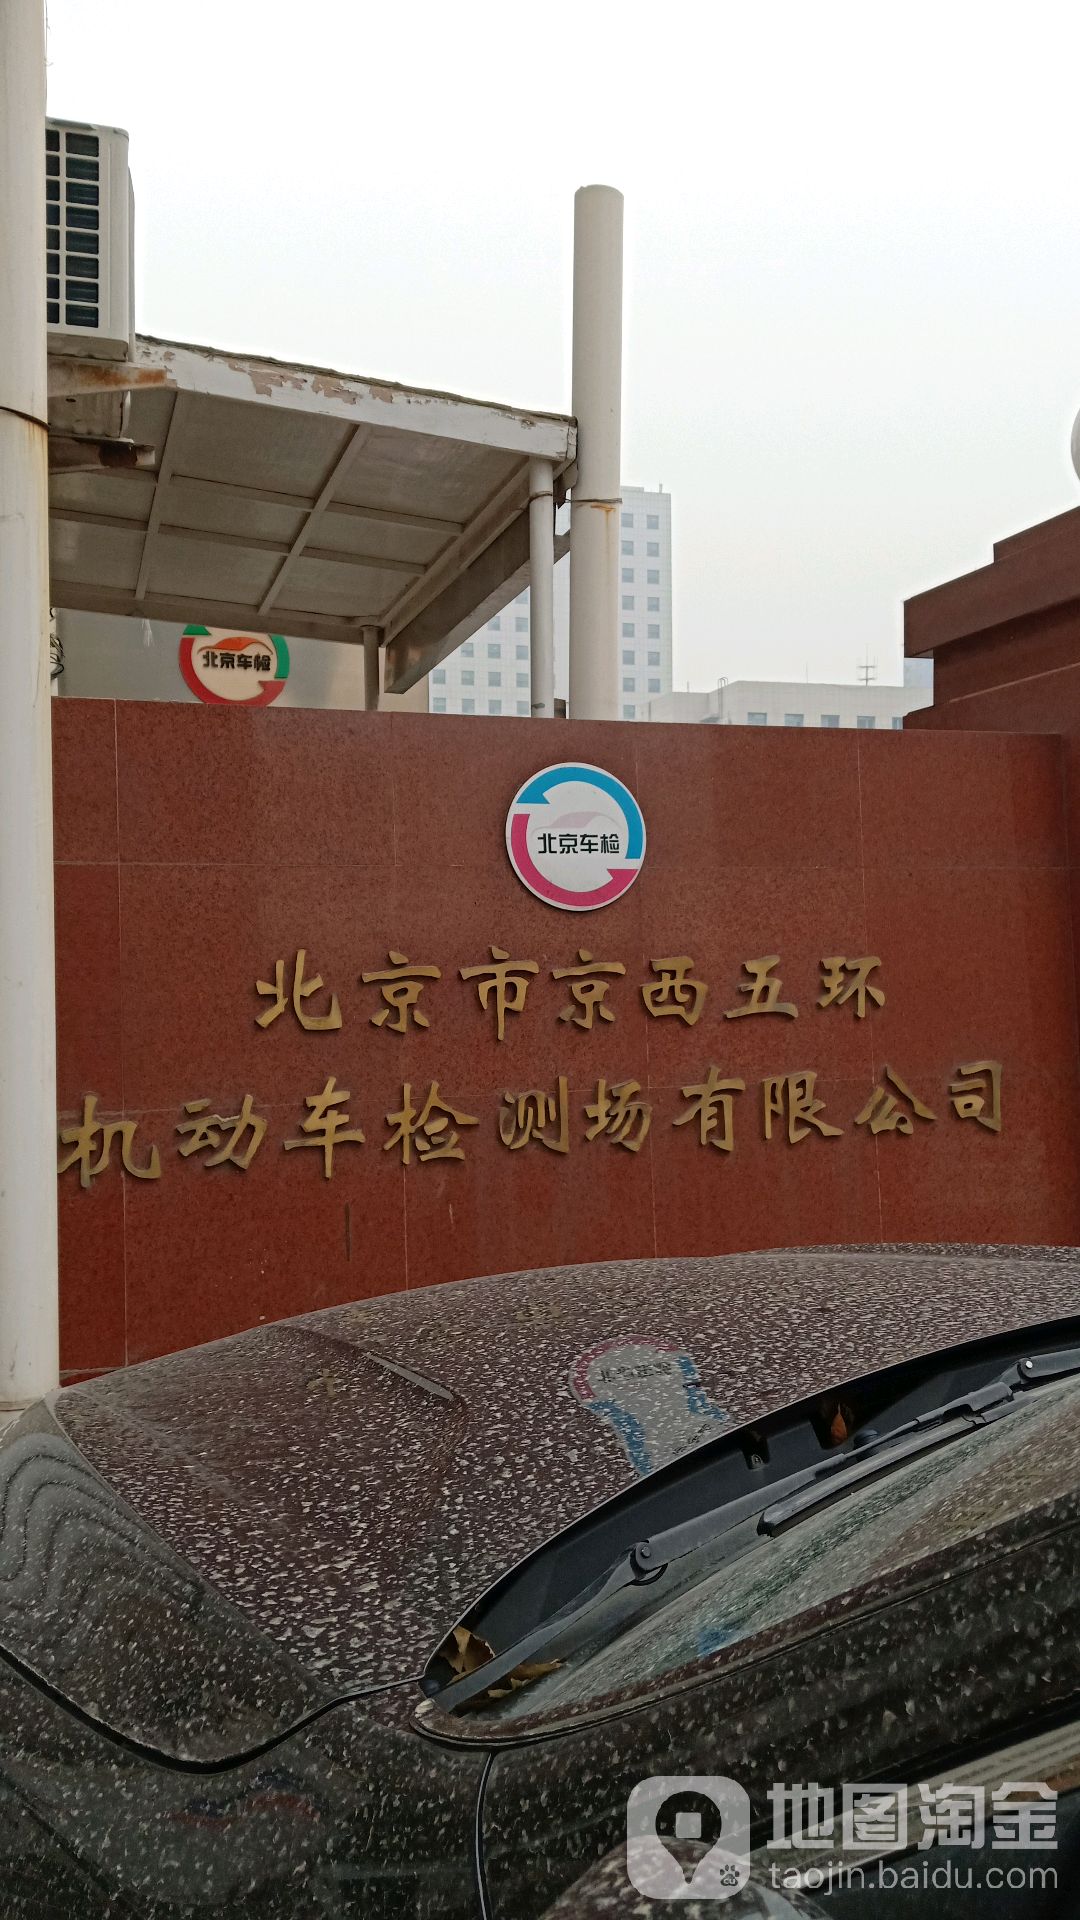 北京市京西五環機動車檢測場有限公司